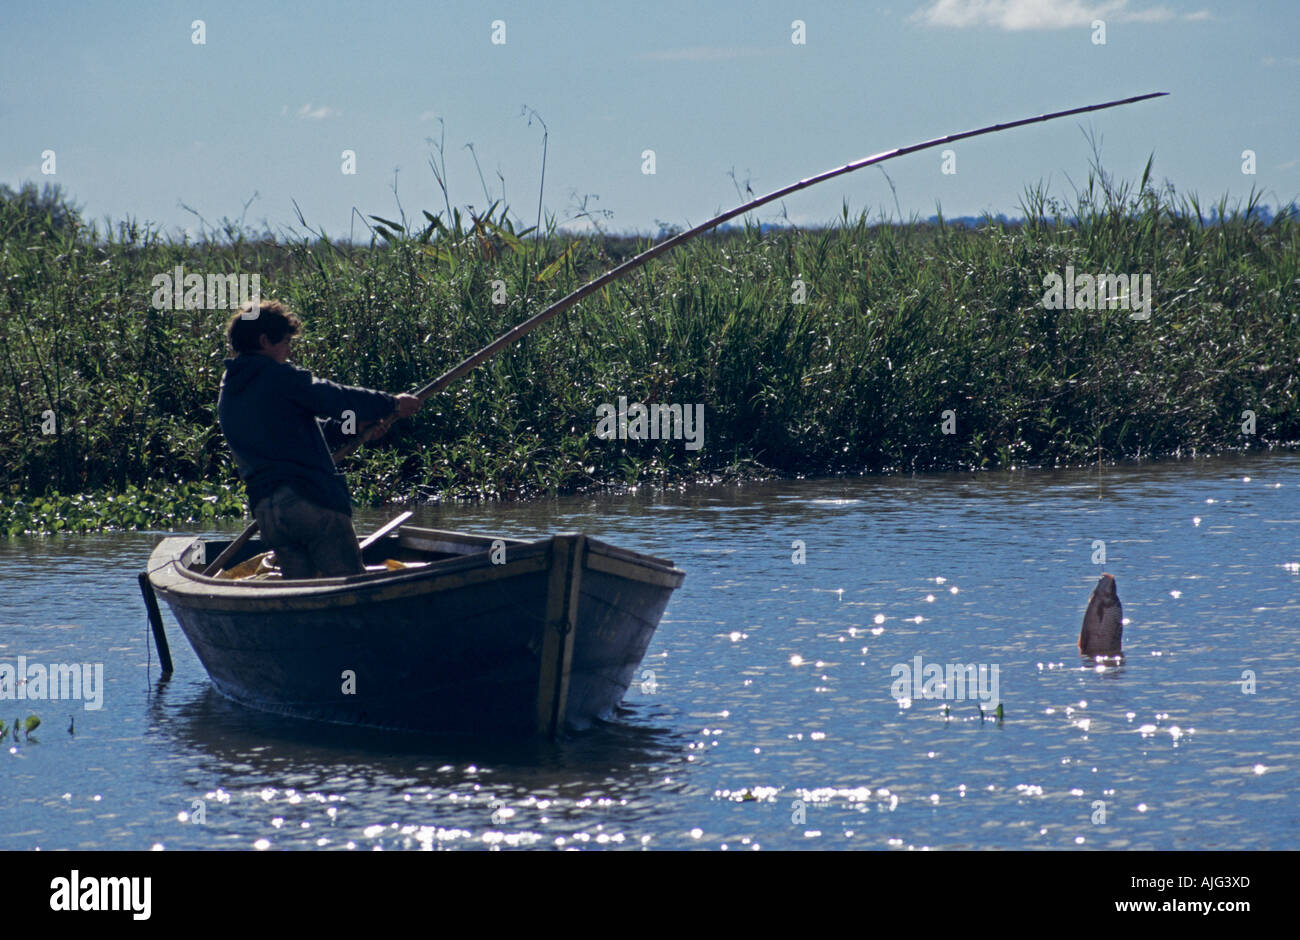 Pecheur En Barque La Capture De Poissons Sur Tige En River Pirana Pres De Rosario Argentine Photo Stock Alamy